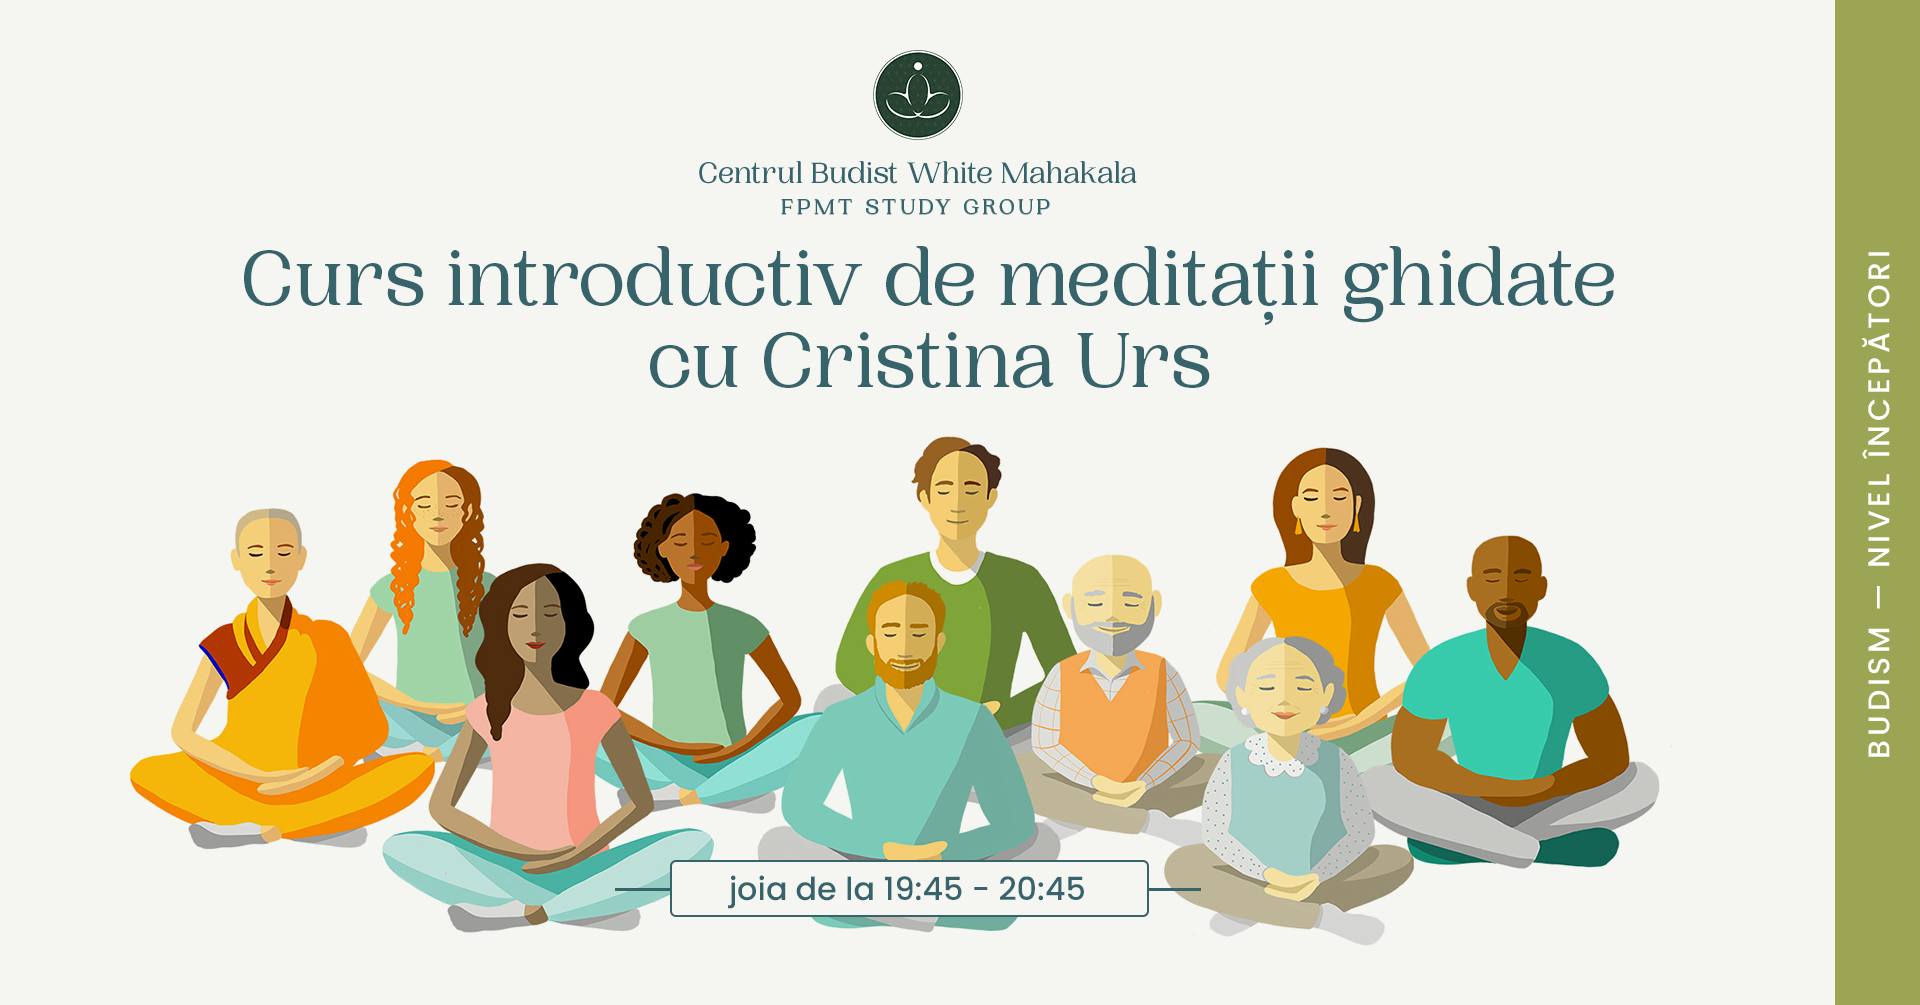 Curs introductiv de meditatii ghidate cu Cristina Urs